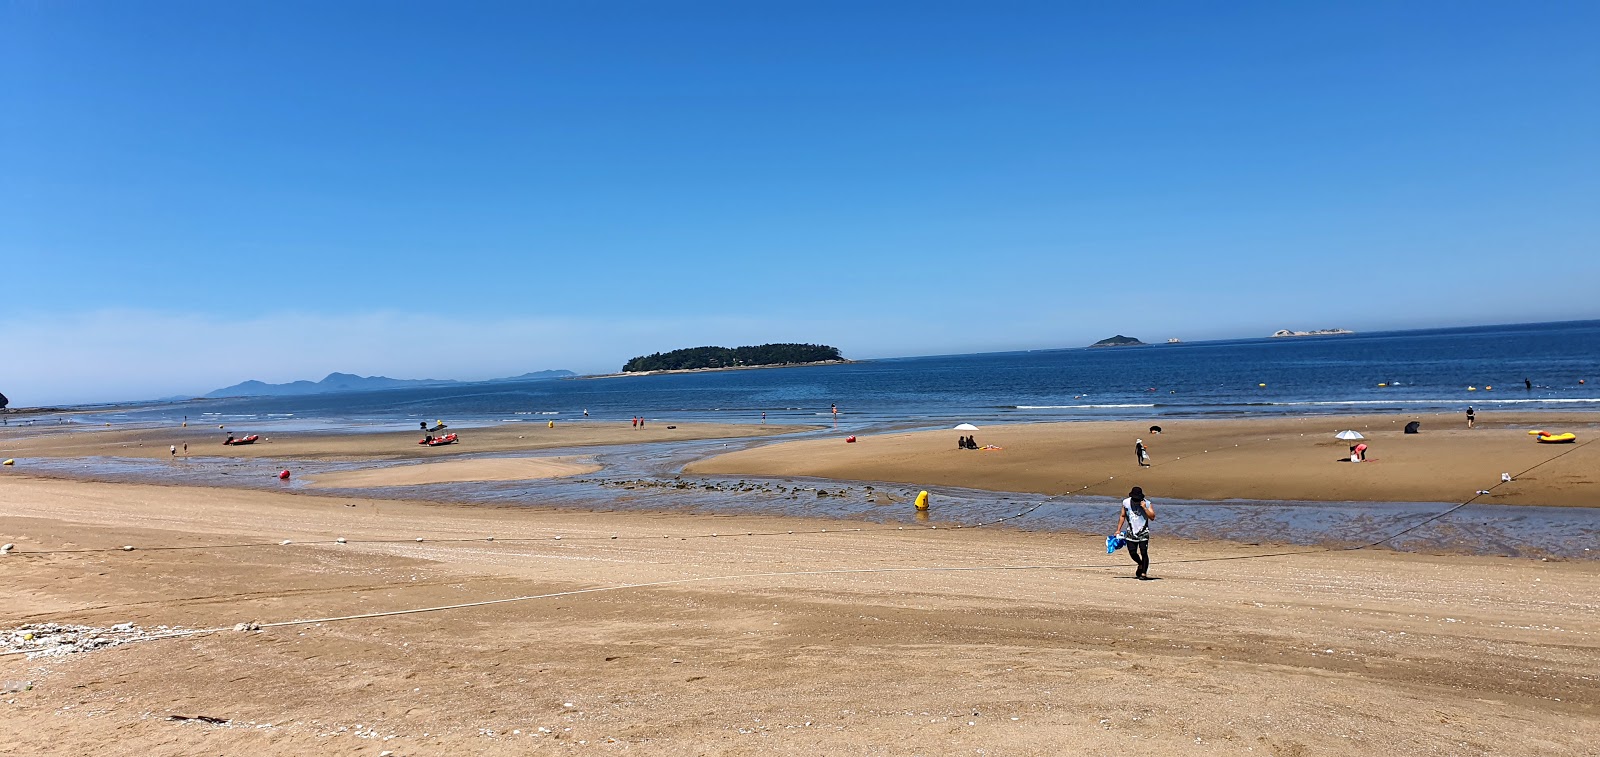 Foto af Gosapo Beach - populært sted blandt afslapningskendere